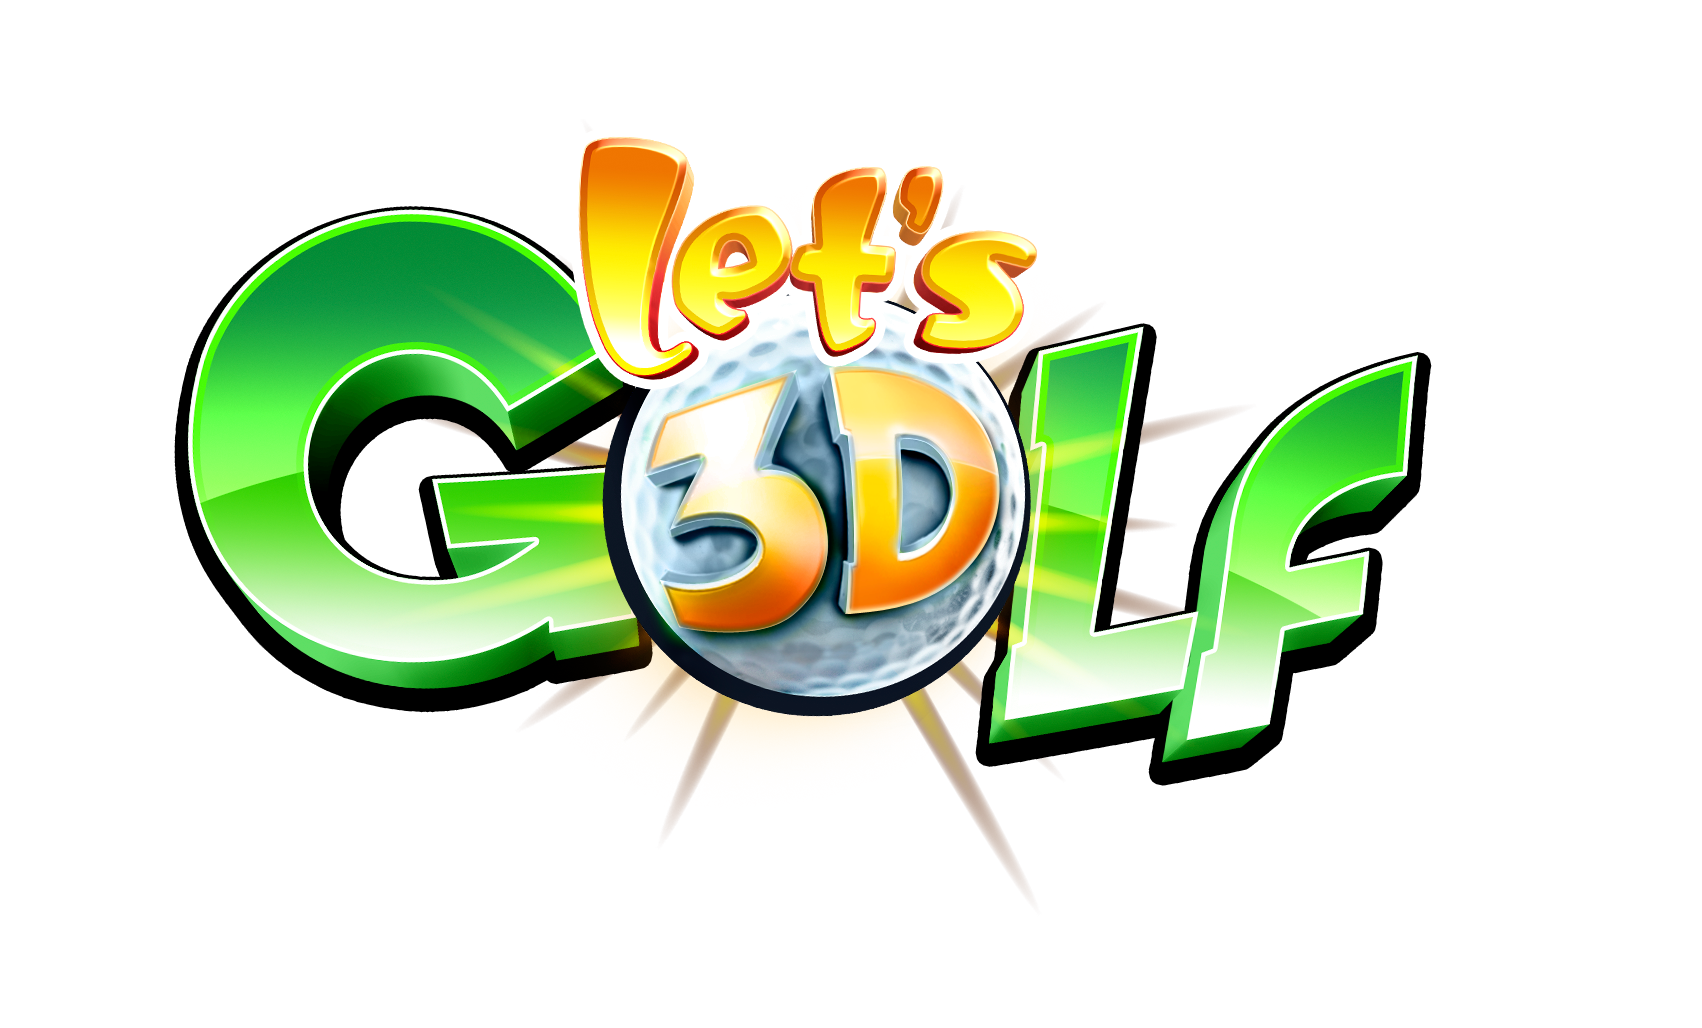 download lets golf 3 apk data mediafire